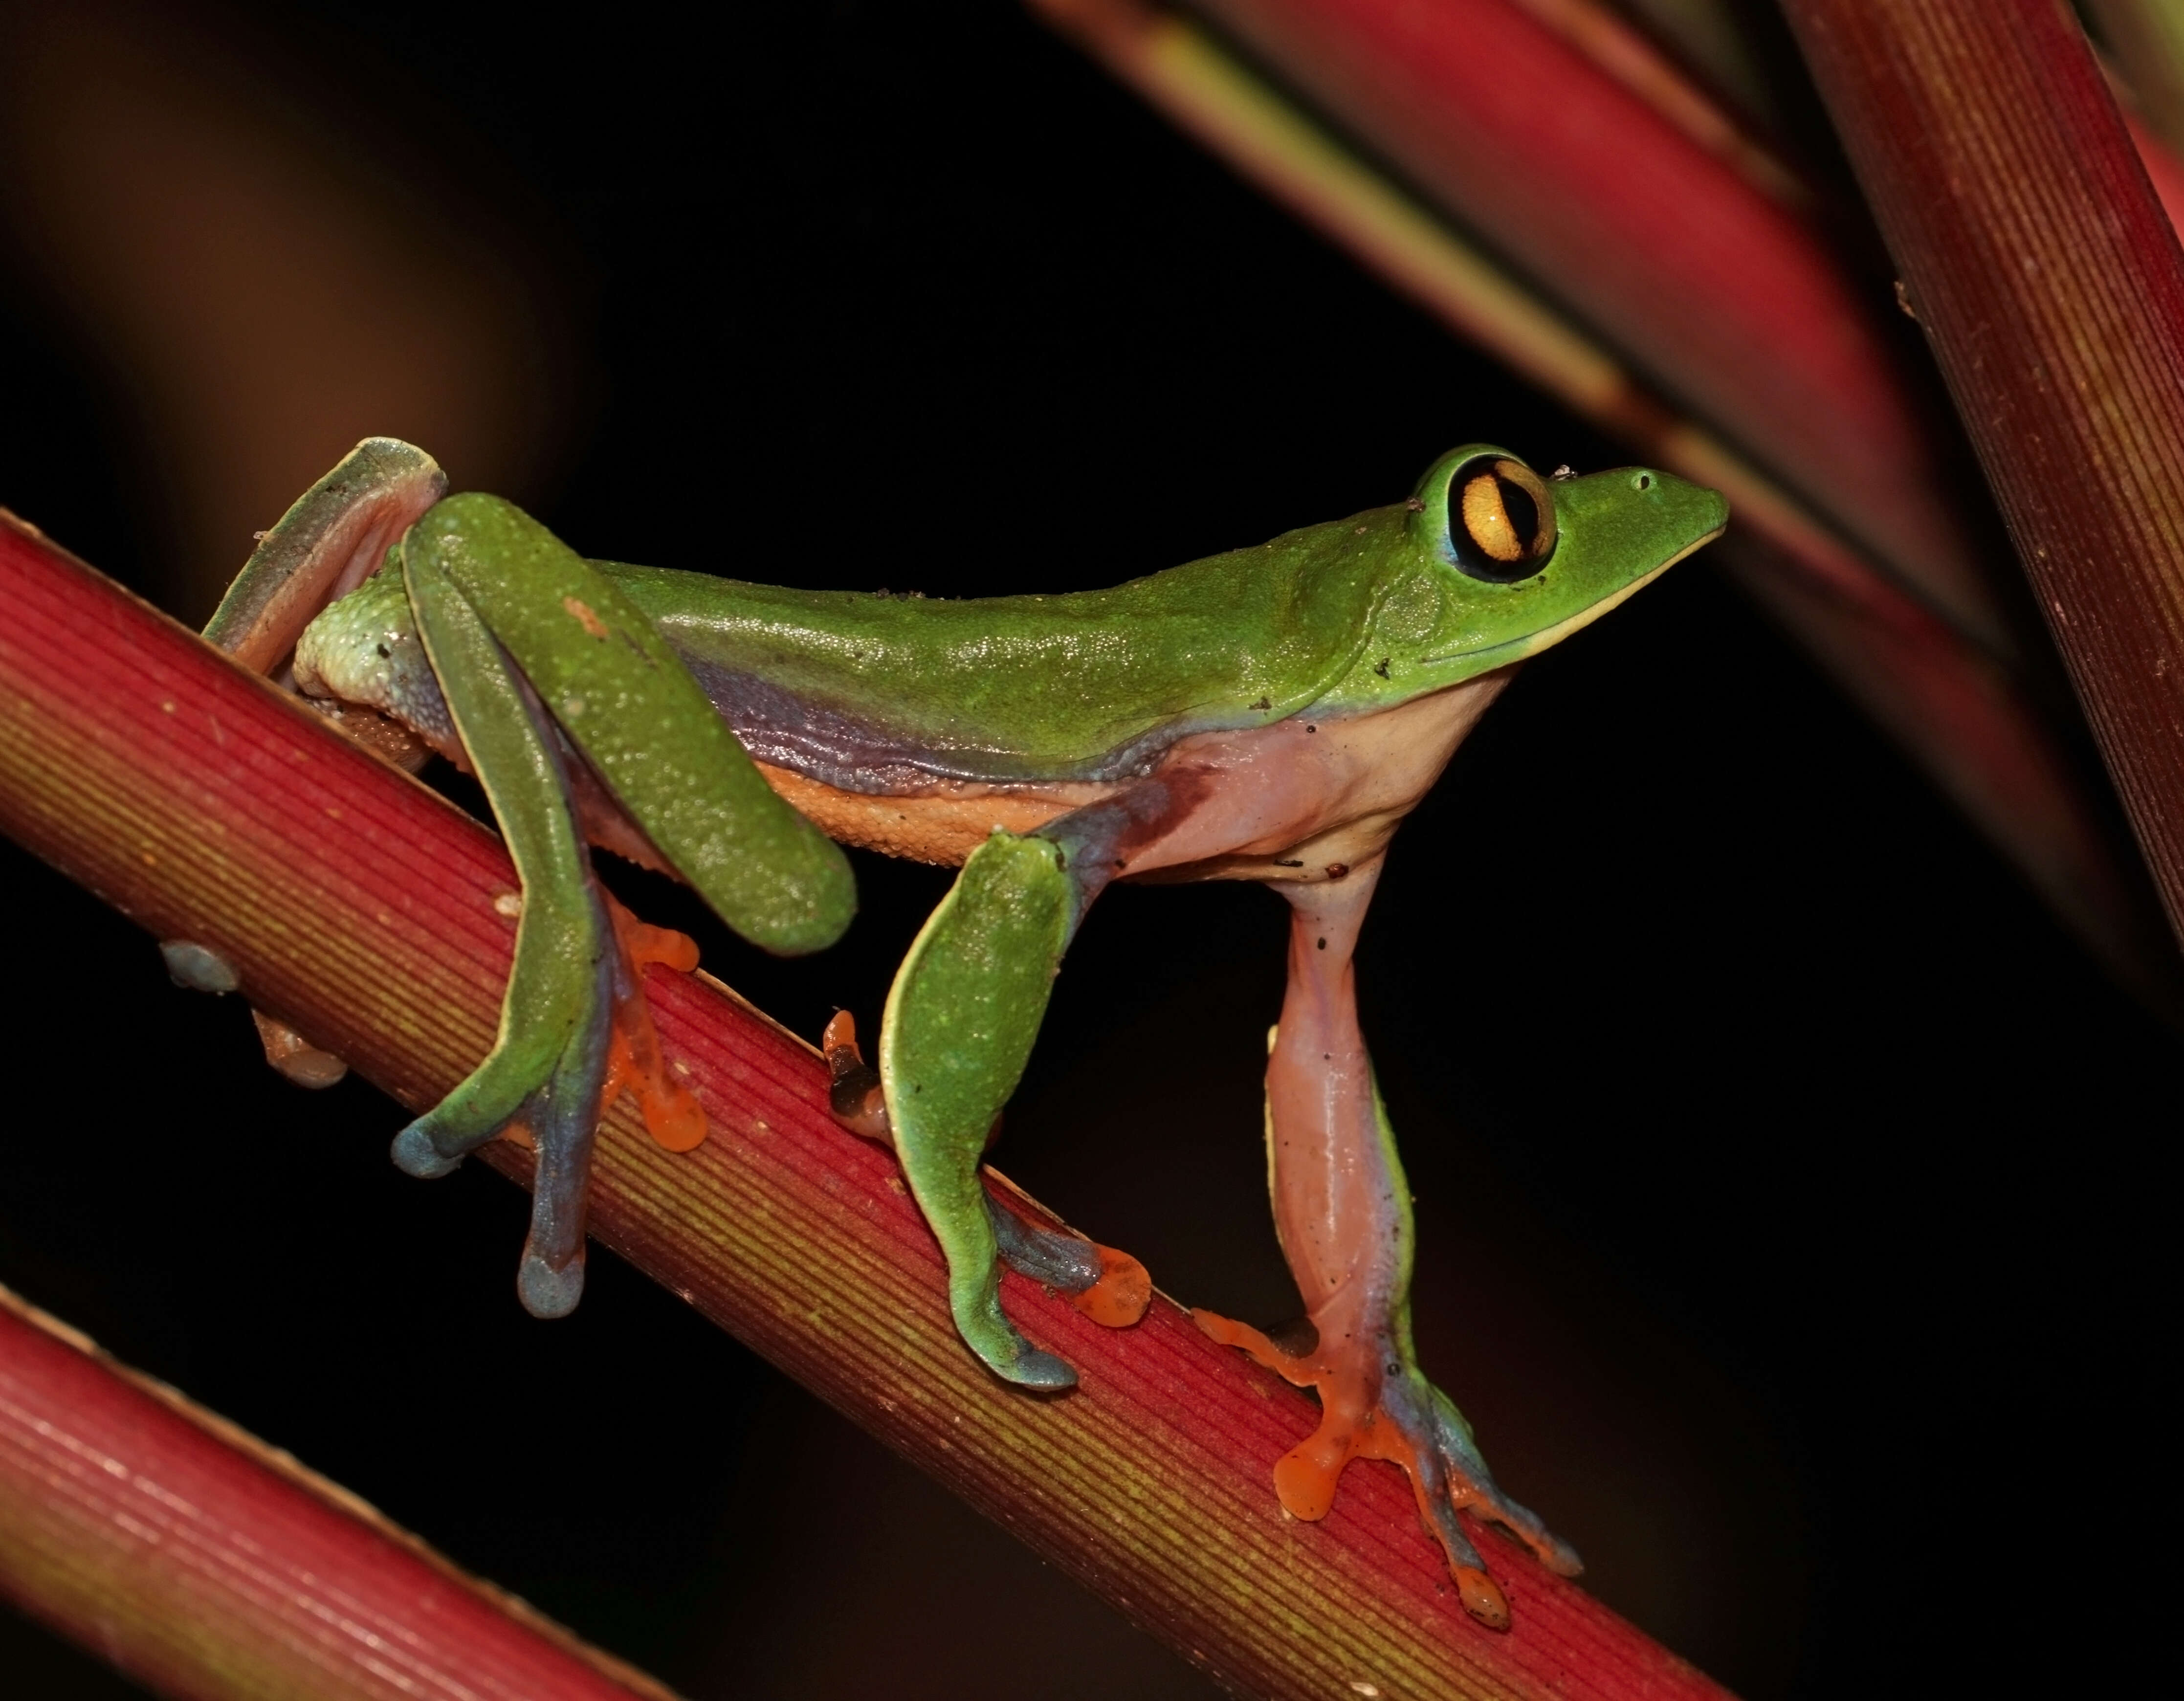 Image of blue-sided leaf frog